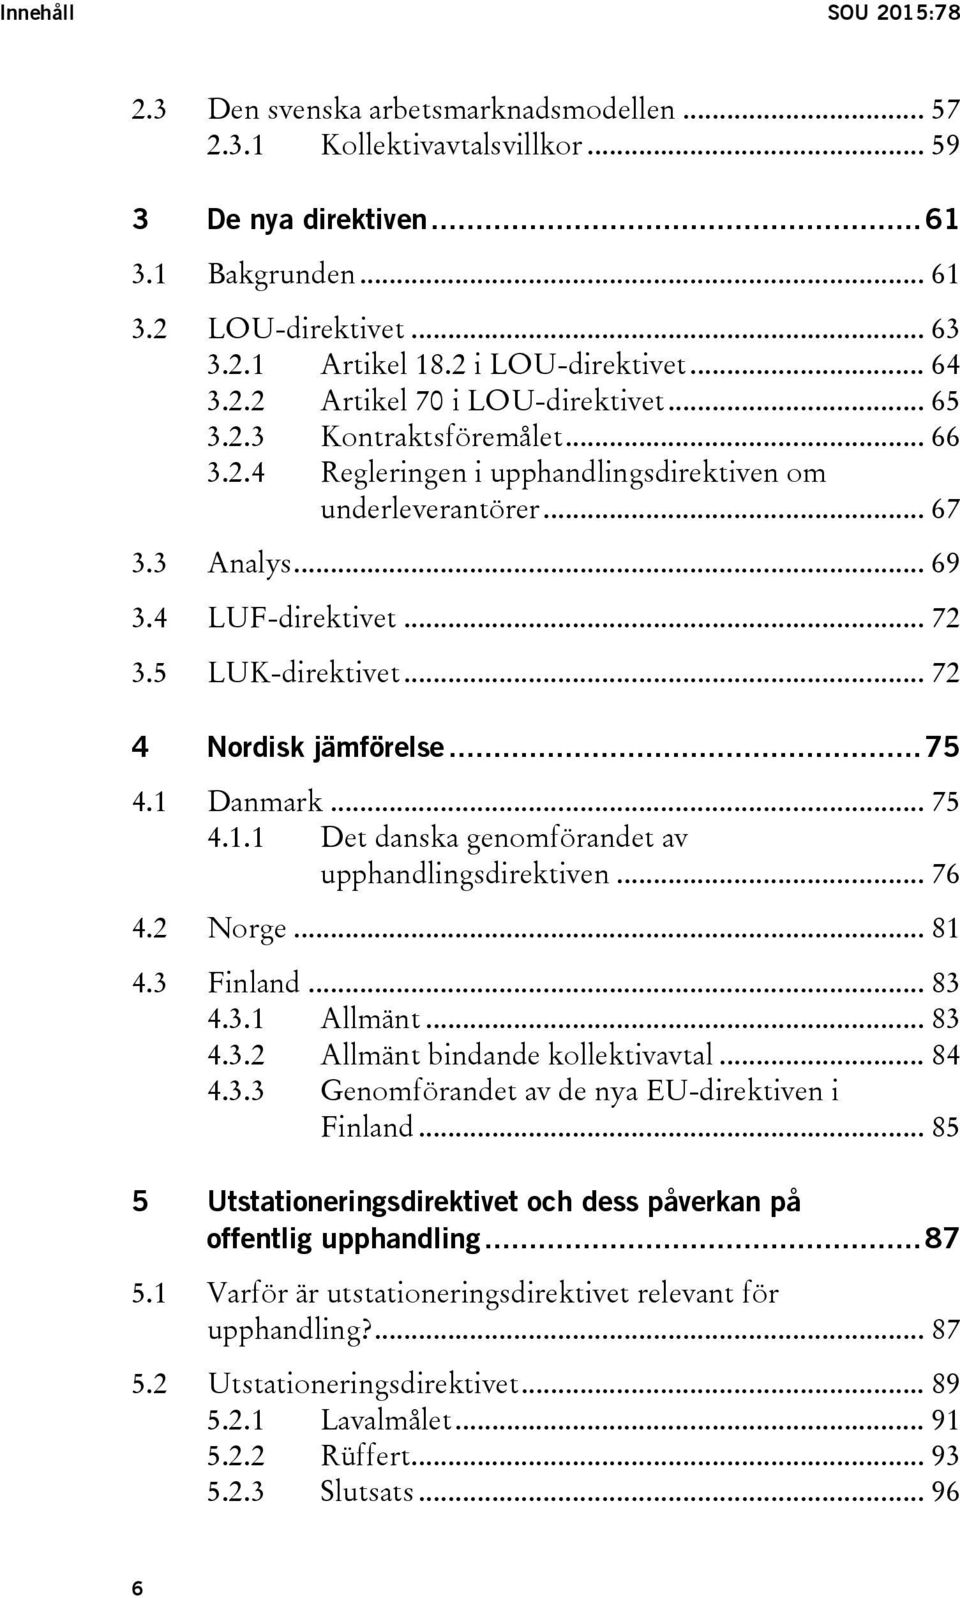 4 LUF-direktivet... 72 3.5 LUK-direktivet... 72 4 Nordisk jämförelse... 75 4.1 Danmark... 75 4.1.1 Det danska genomförandet av upphandlingsdirektiven... 76 4.2 Norge... 81 4.3 Finland... 83 4.3.1 Allmänt.